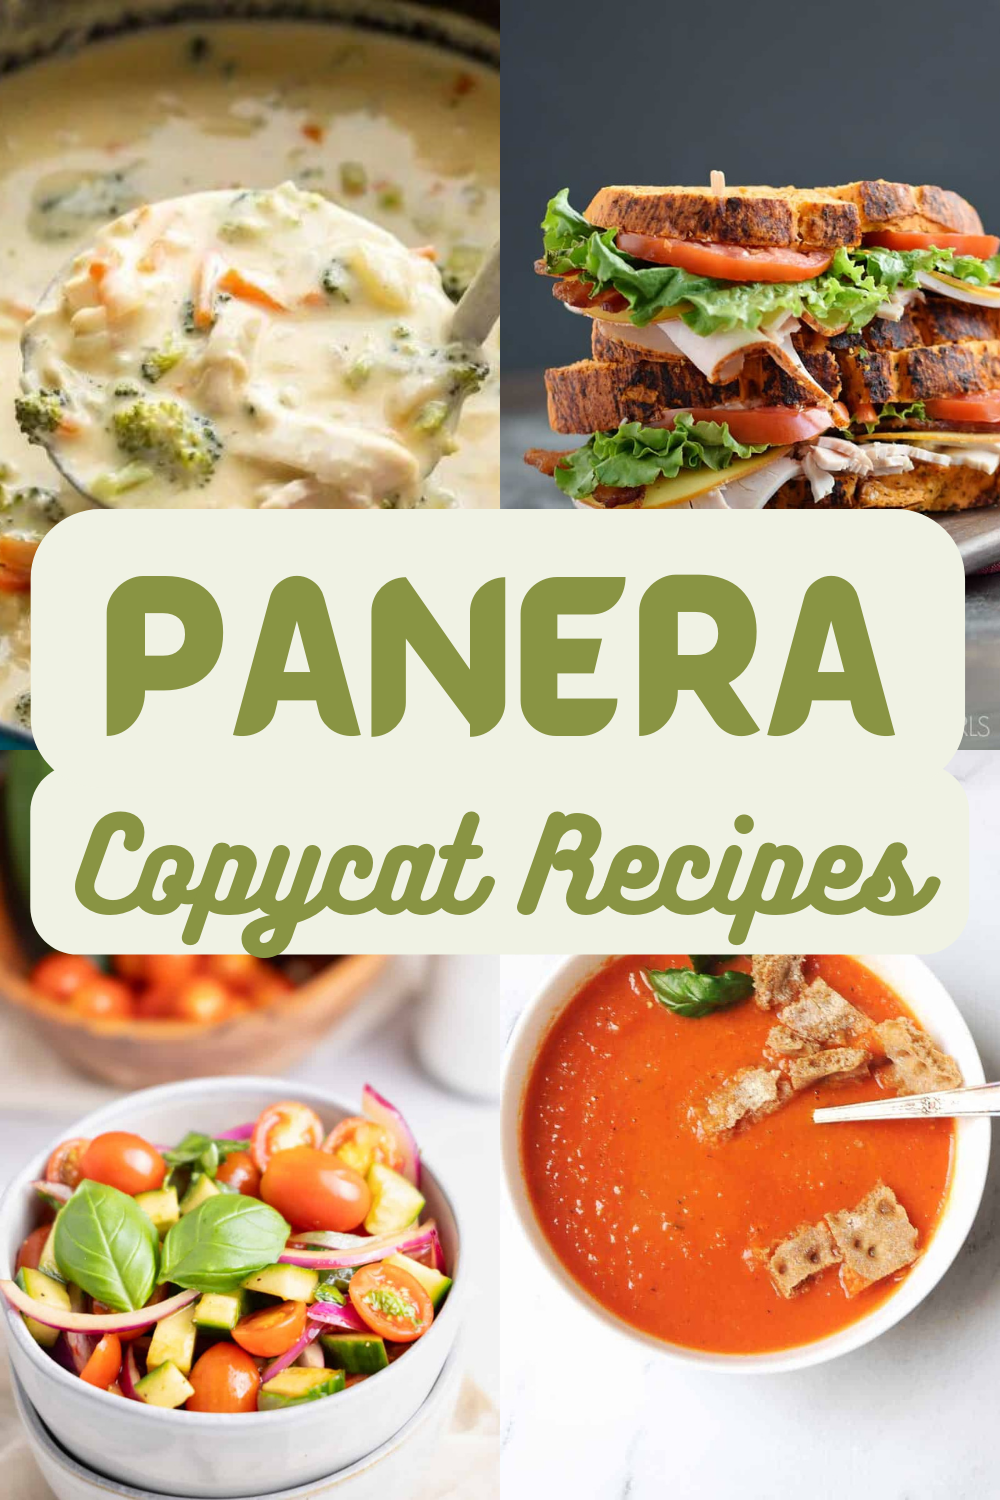 15 Panera Bread Copycat Recipes